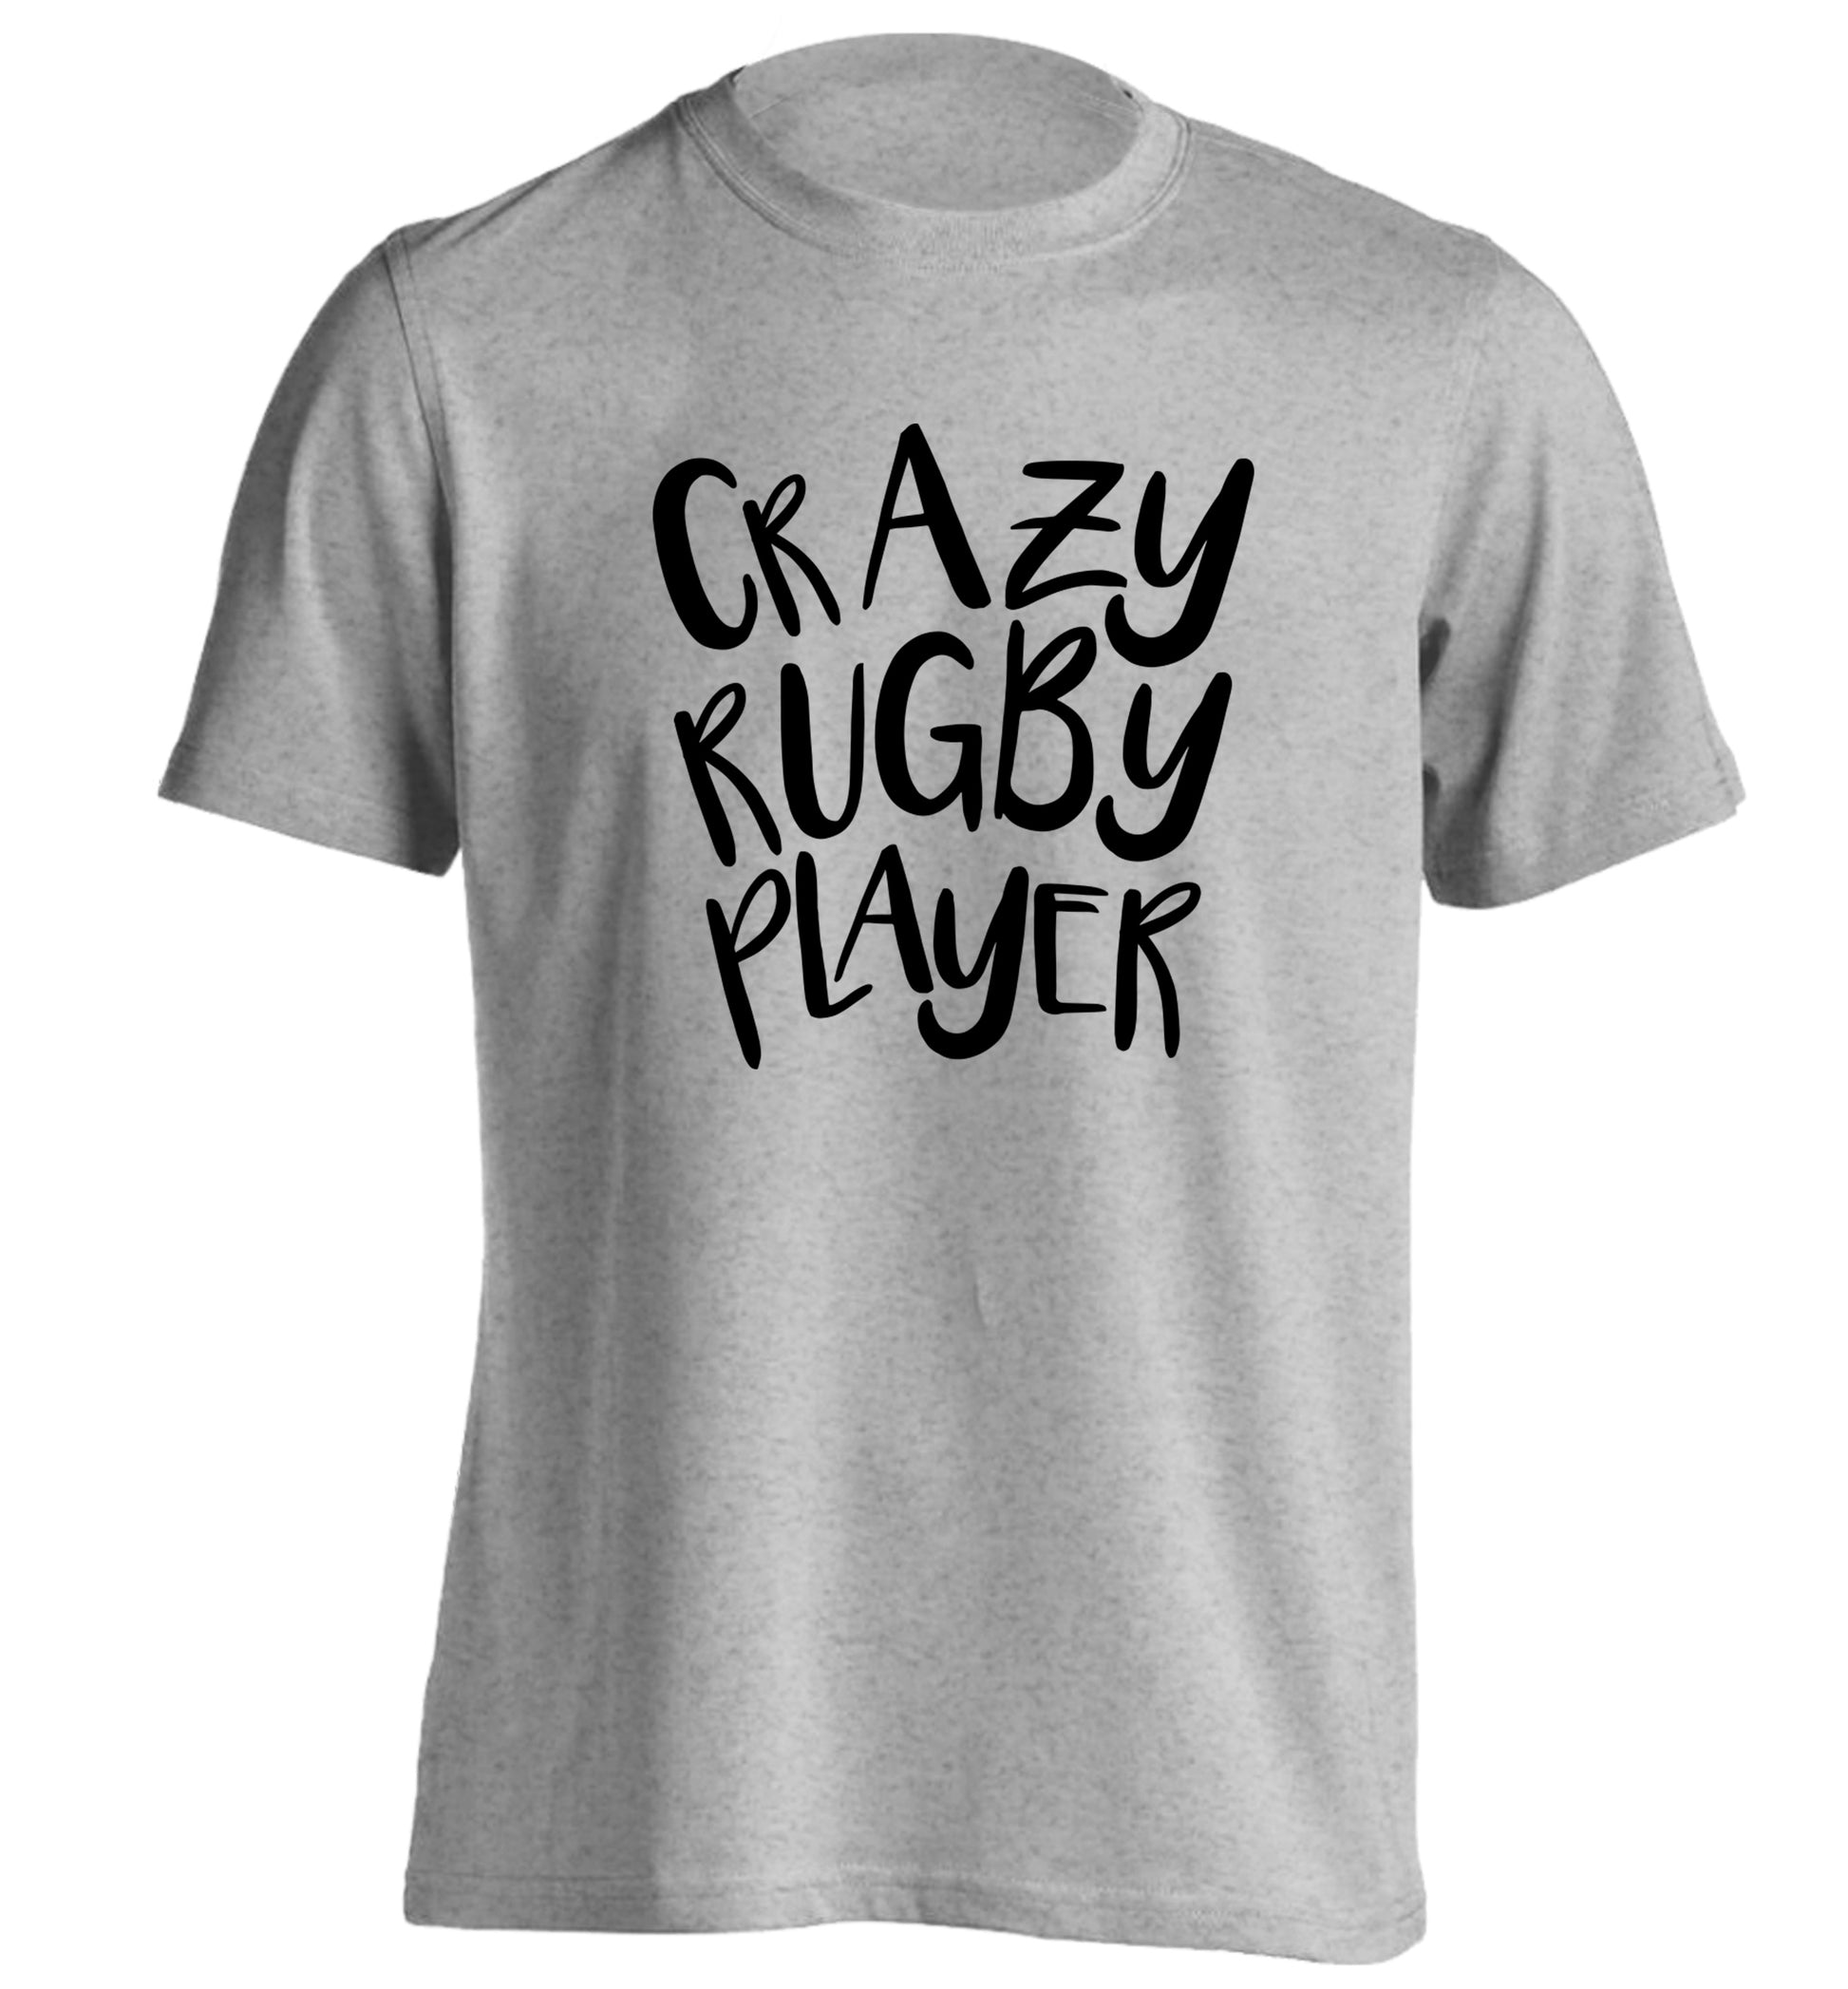 Crazy rugby player adults unisex grey Tshirt 2XL